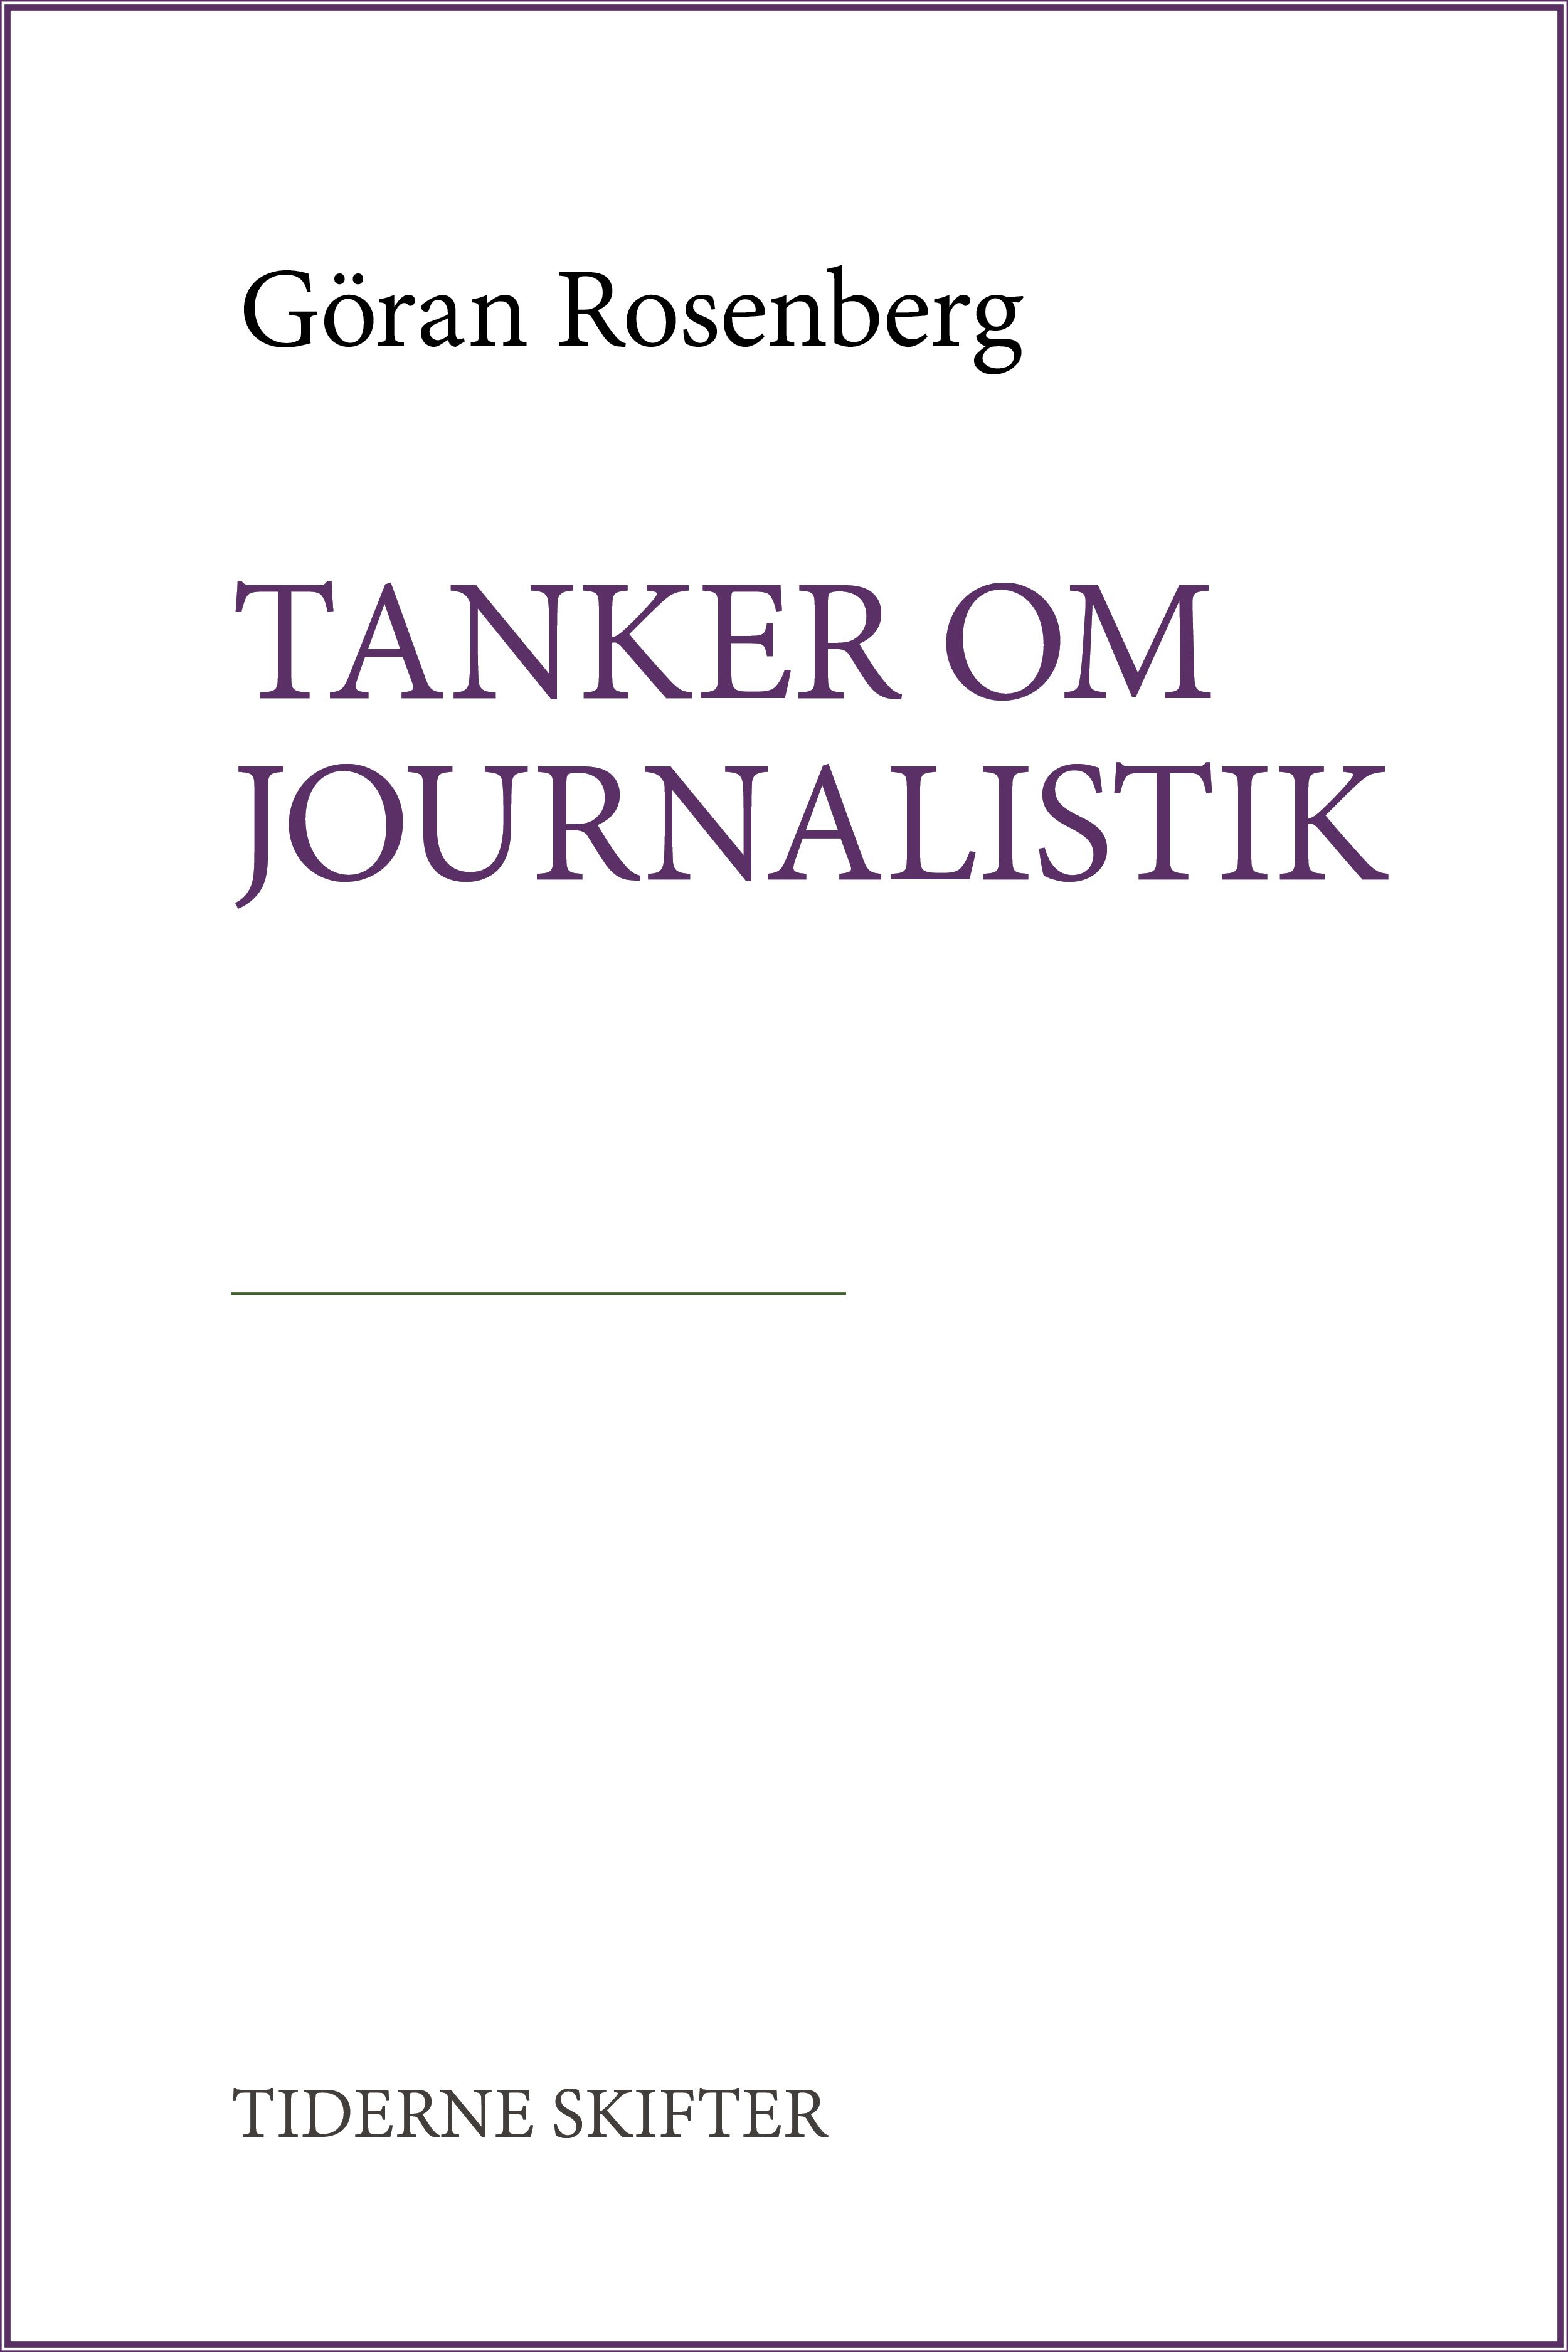 Tanker om journalistik, e-bog af Göran Rosenberg